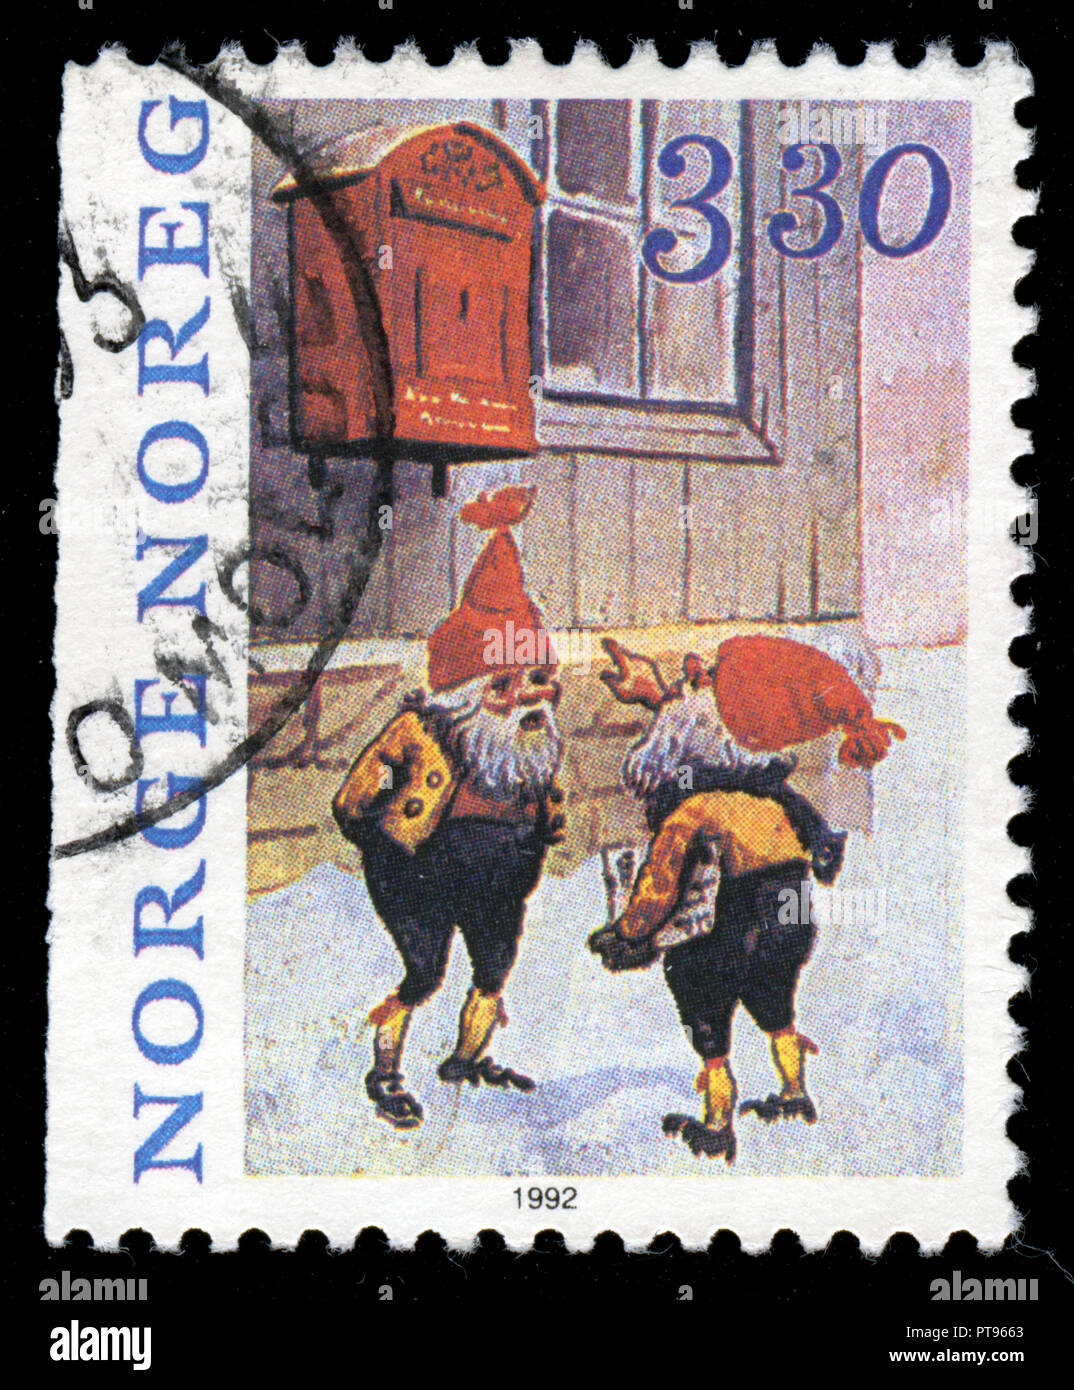 Timbre cachet de la Norvège dans la série de noël publiée en 1992 Banque D'Images